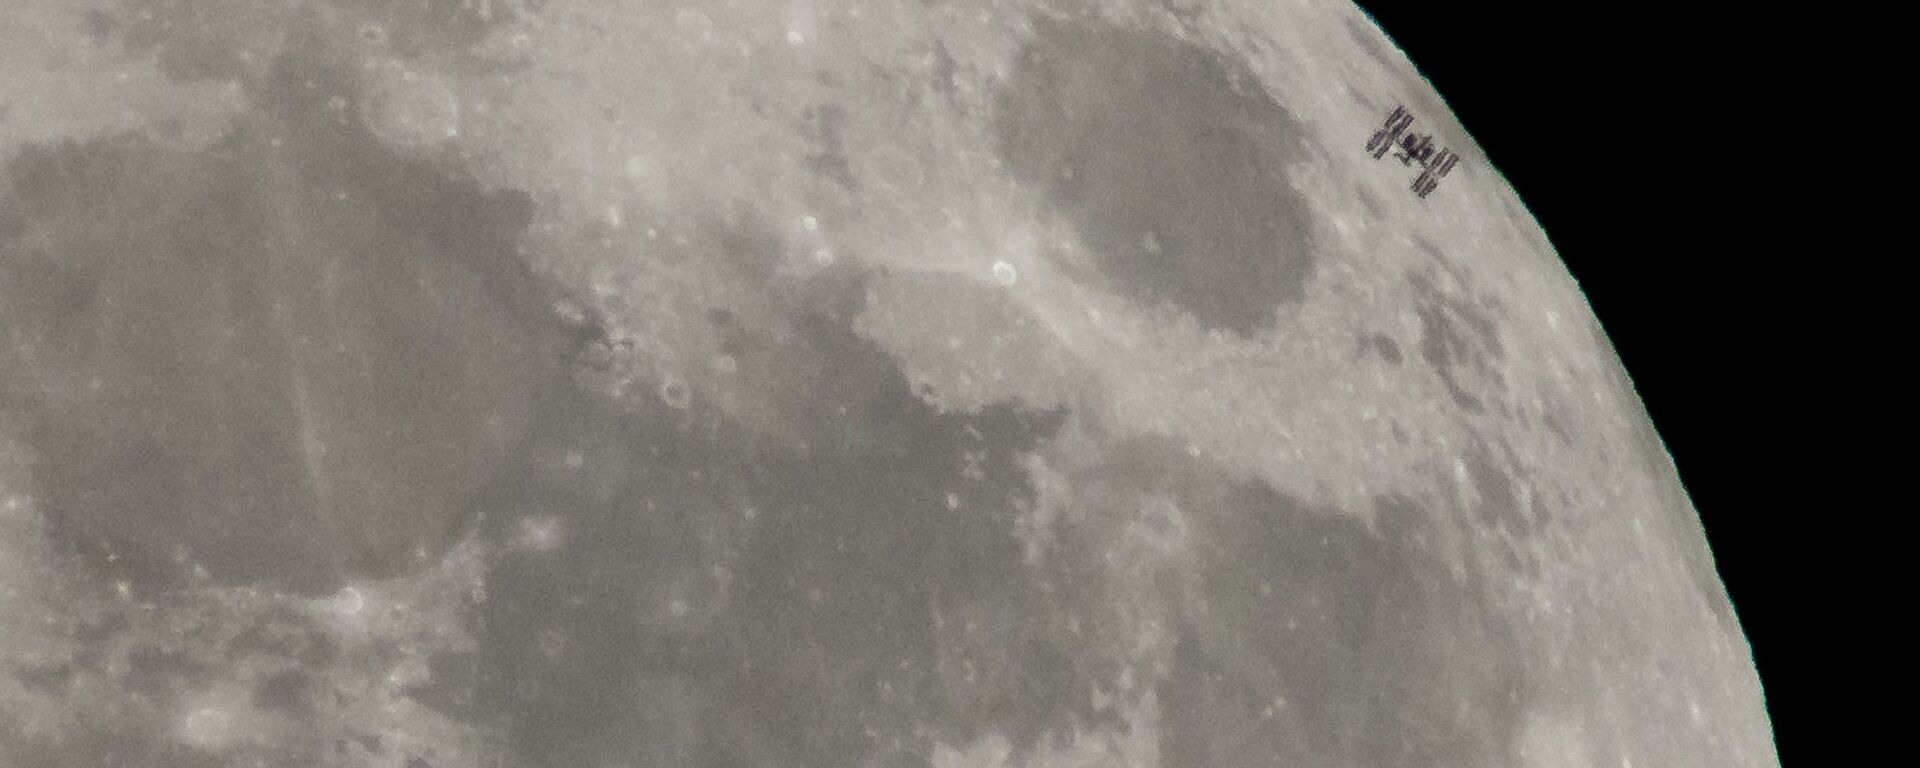 МКС на фоне Луны  - Sputnik Узбекистан, 1920, 21.08.2018